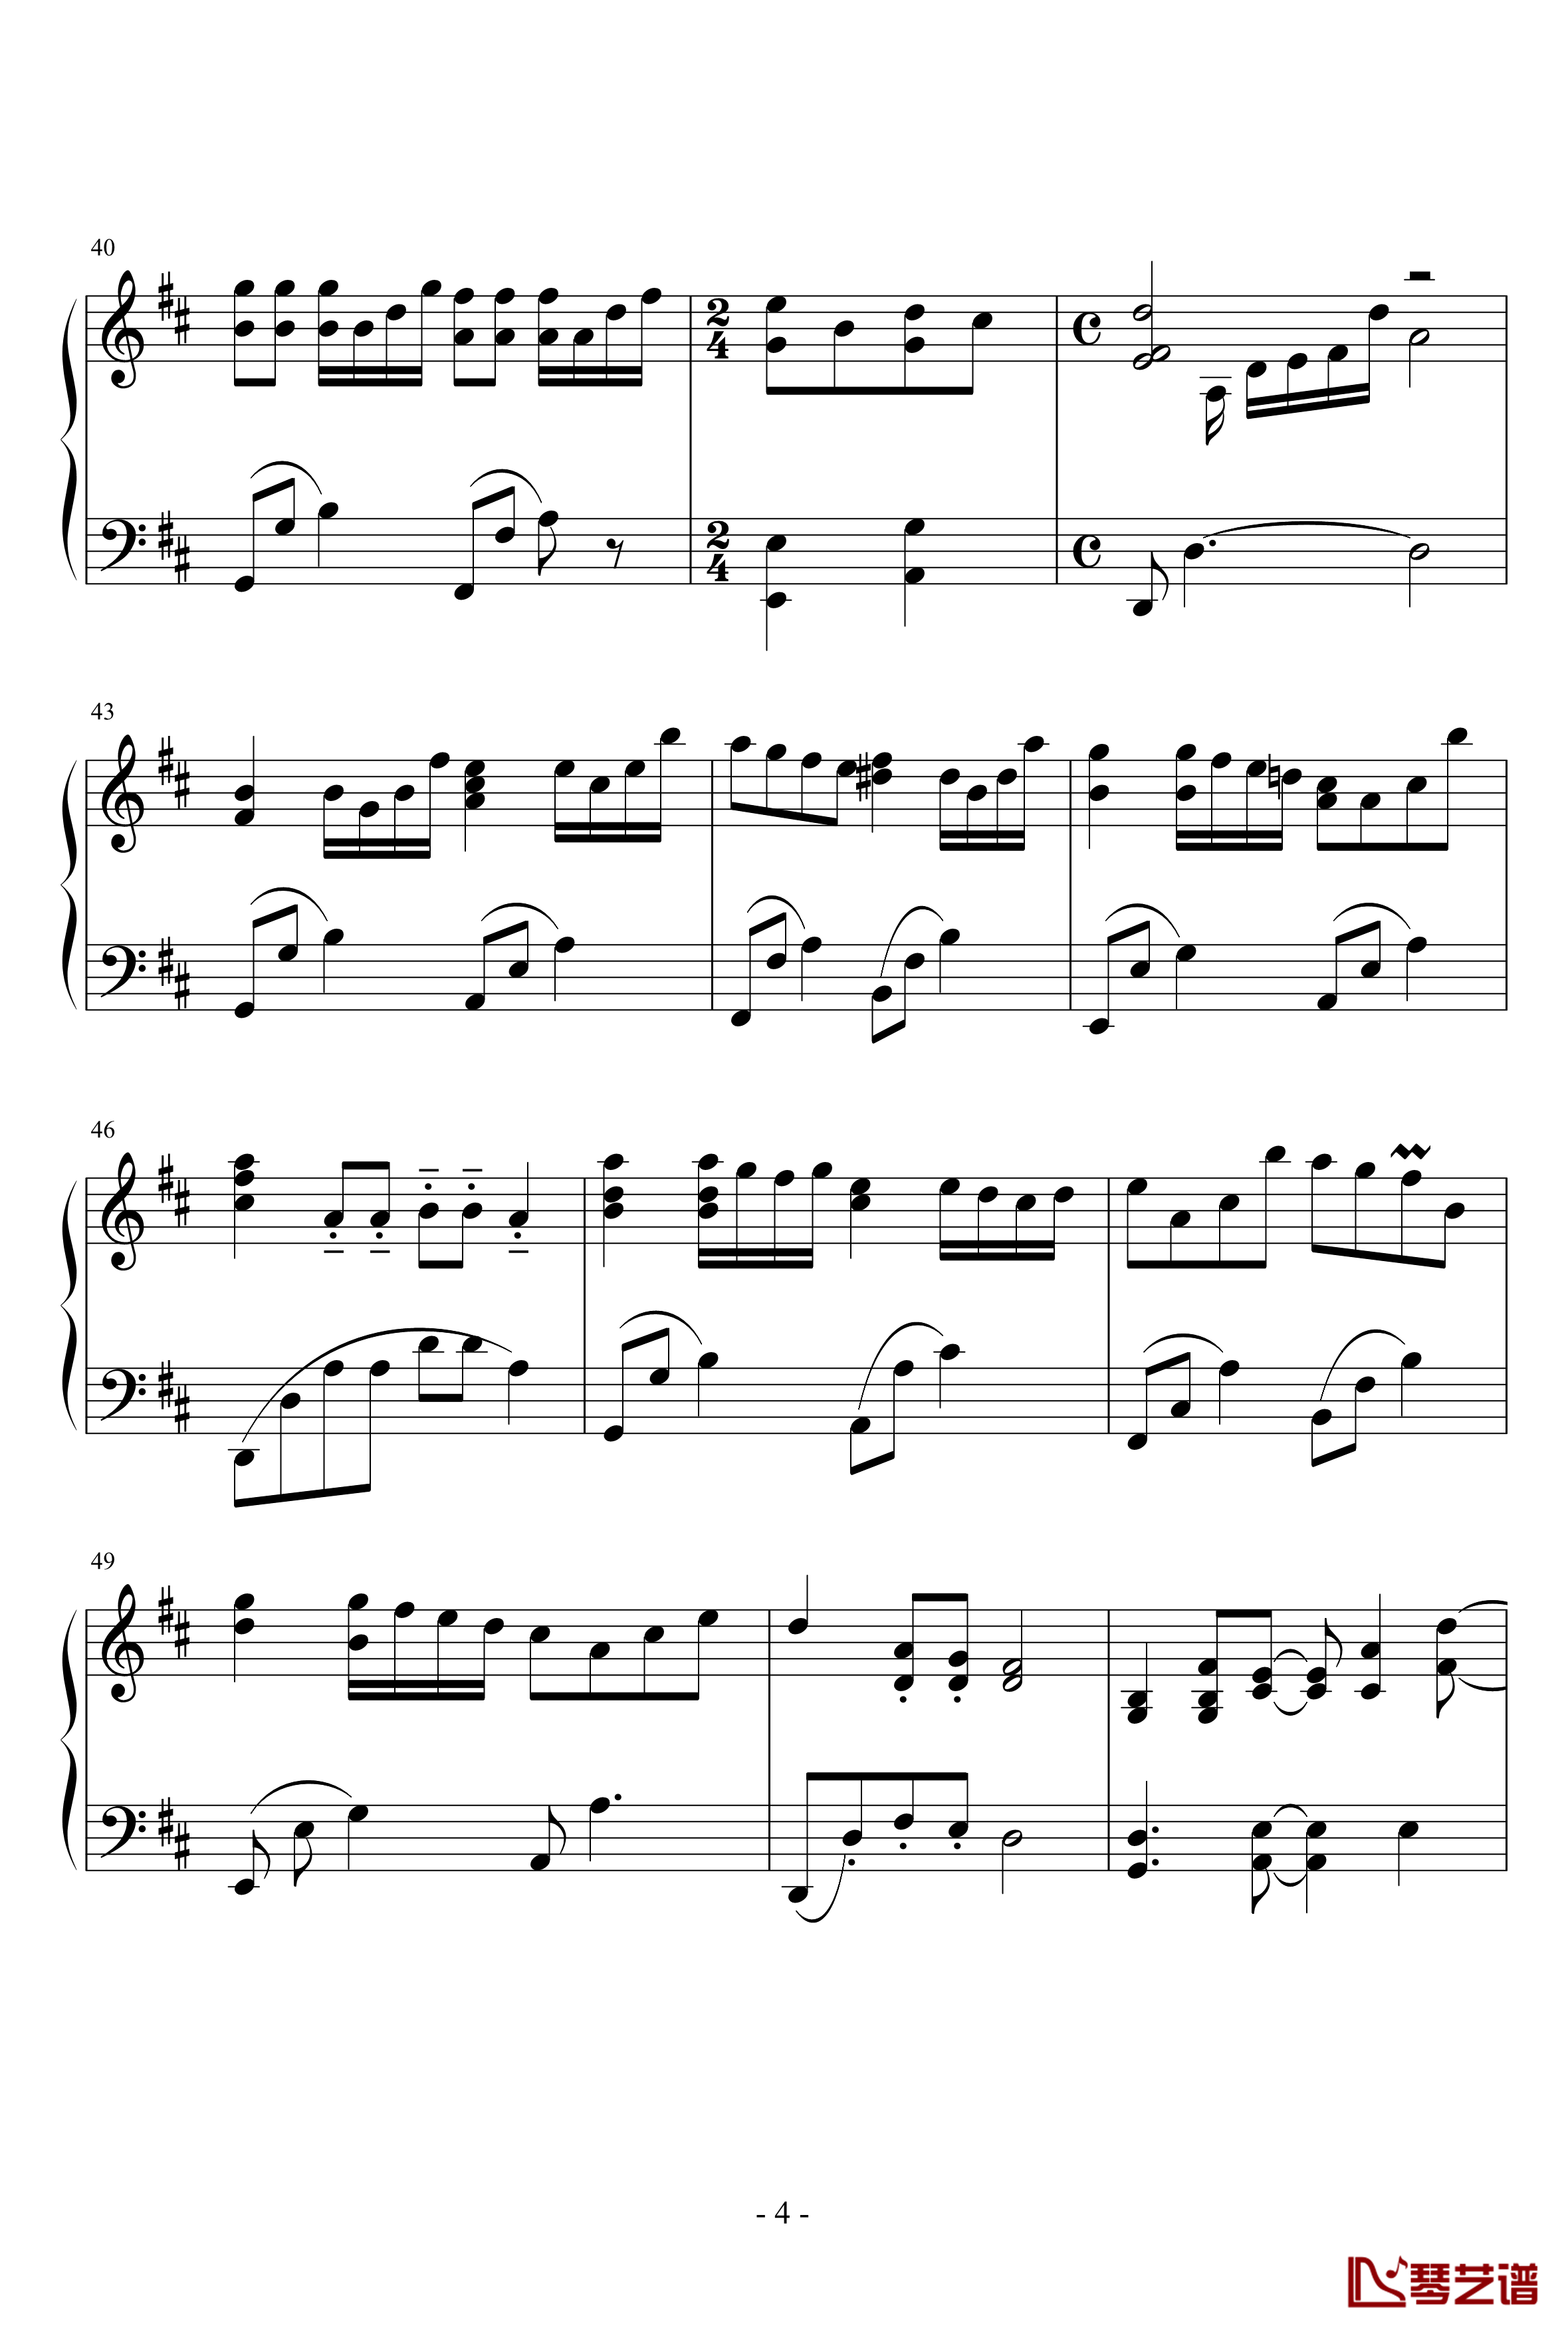 小星星幻想曲钢琴谱-完美版-V.K克4